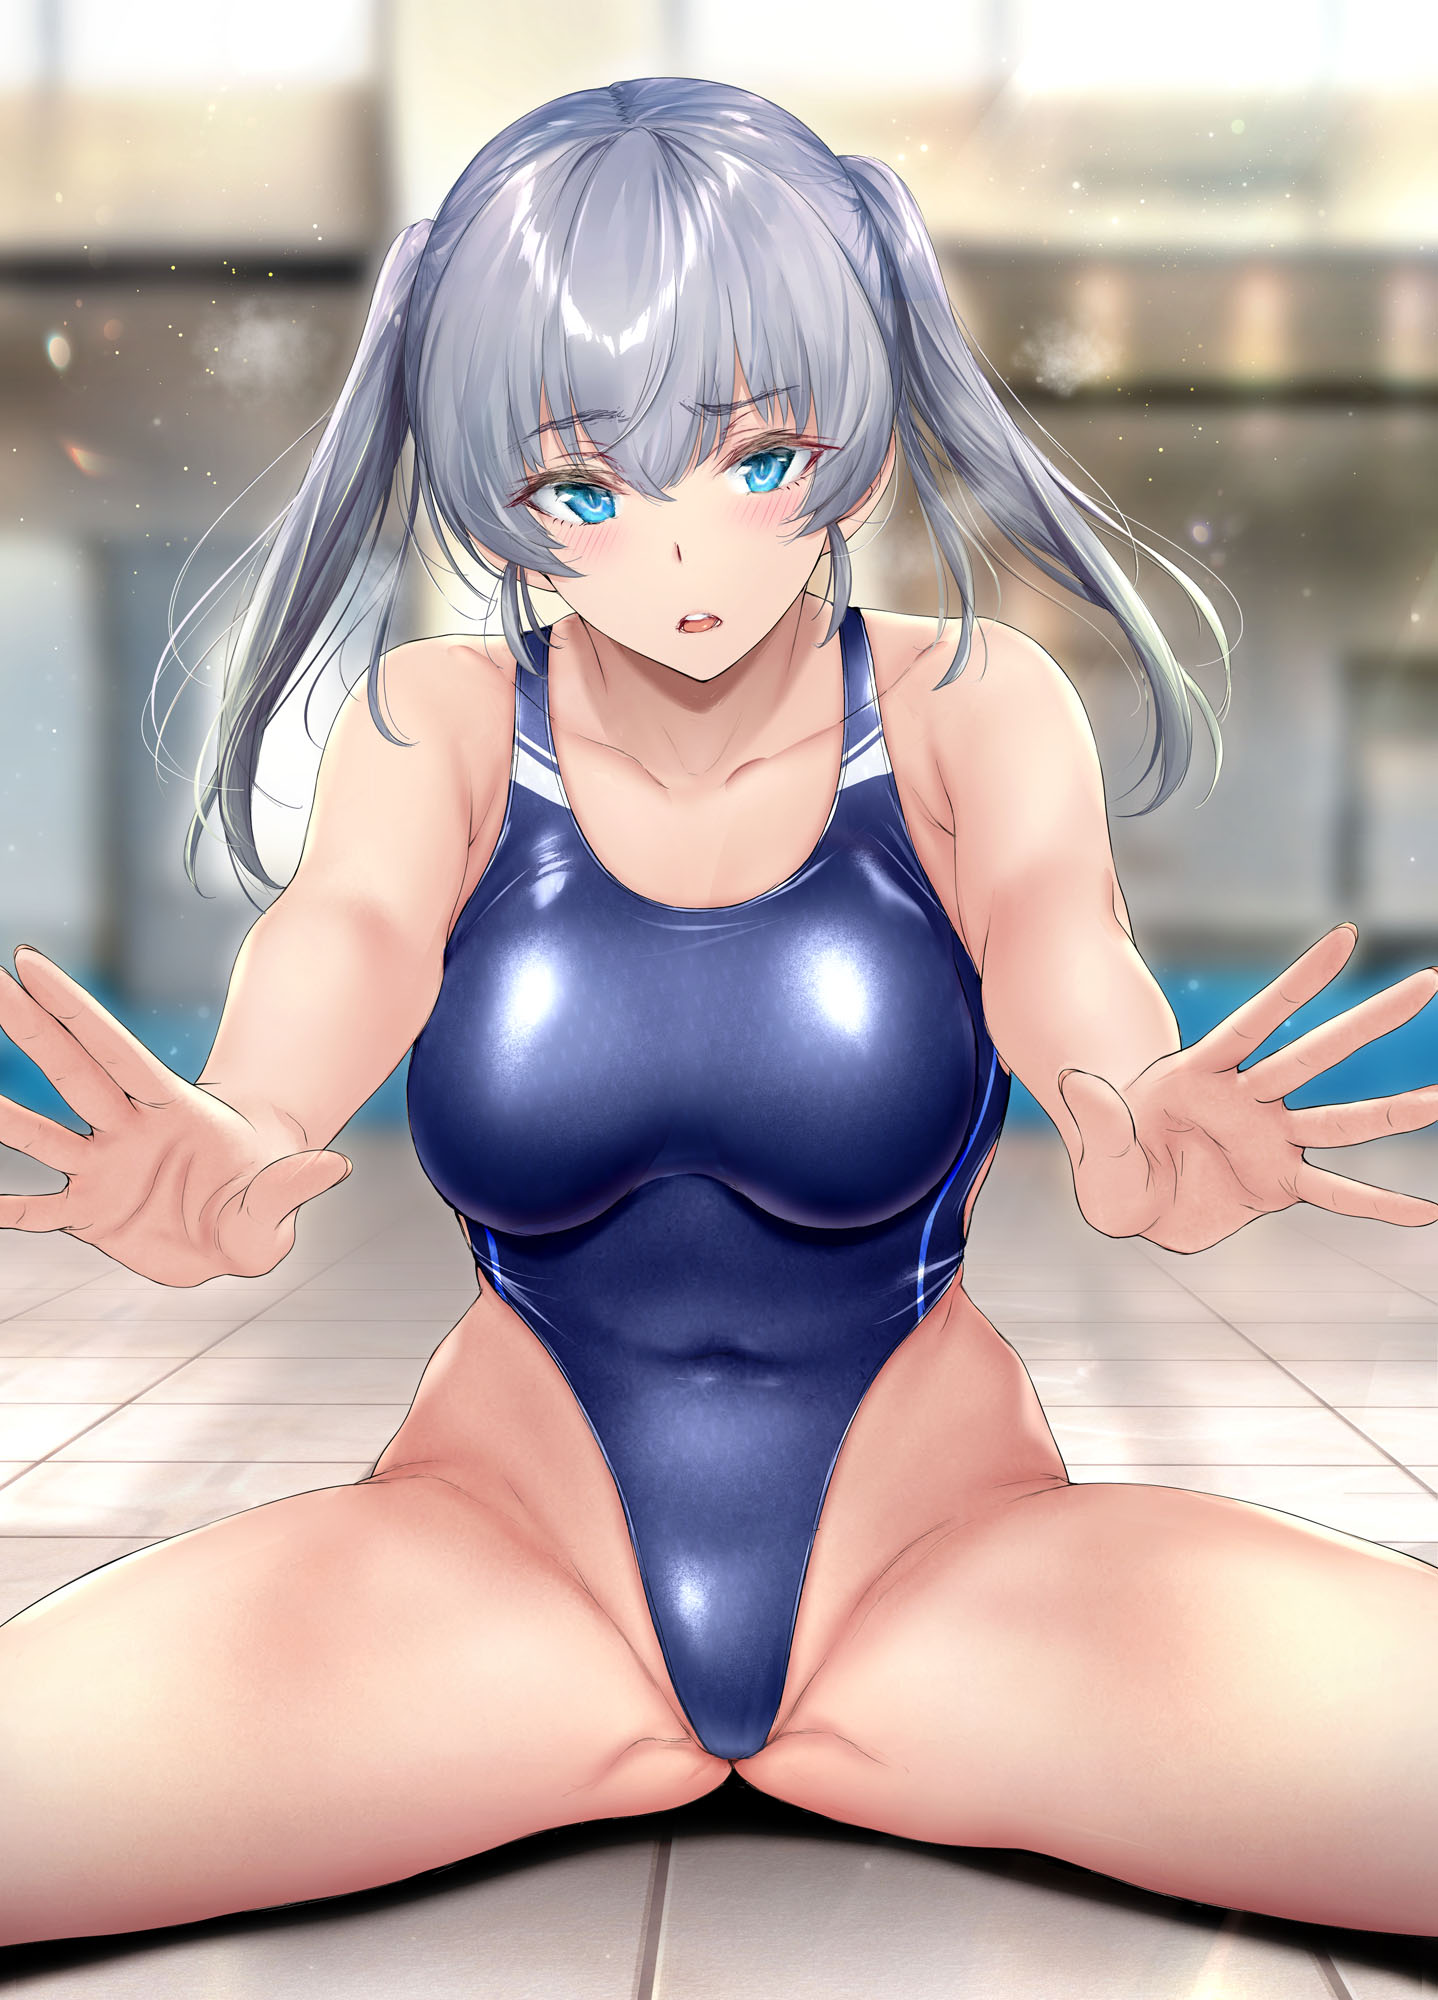 Anime 1438x2000 anime anime girls kimi omou koi Gentsuki gray hair blue eyes blushing one-piece swimsuit spread legs big boobs